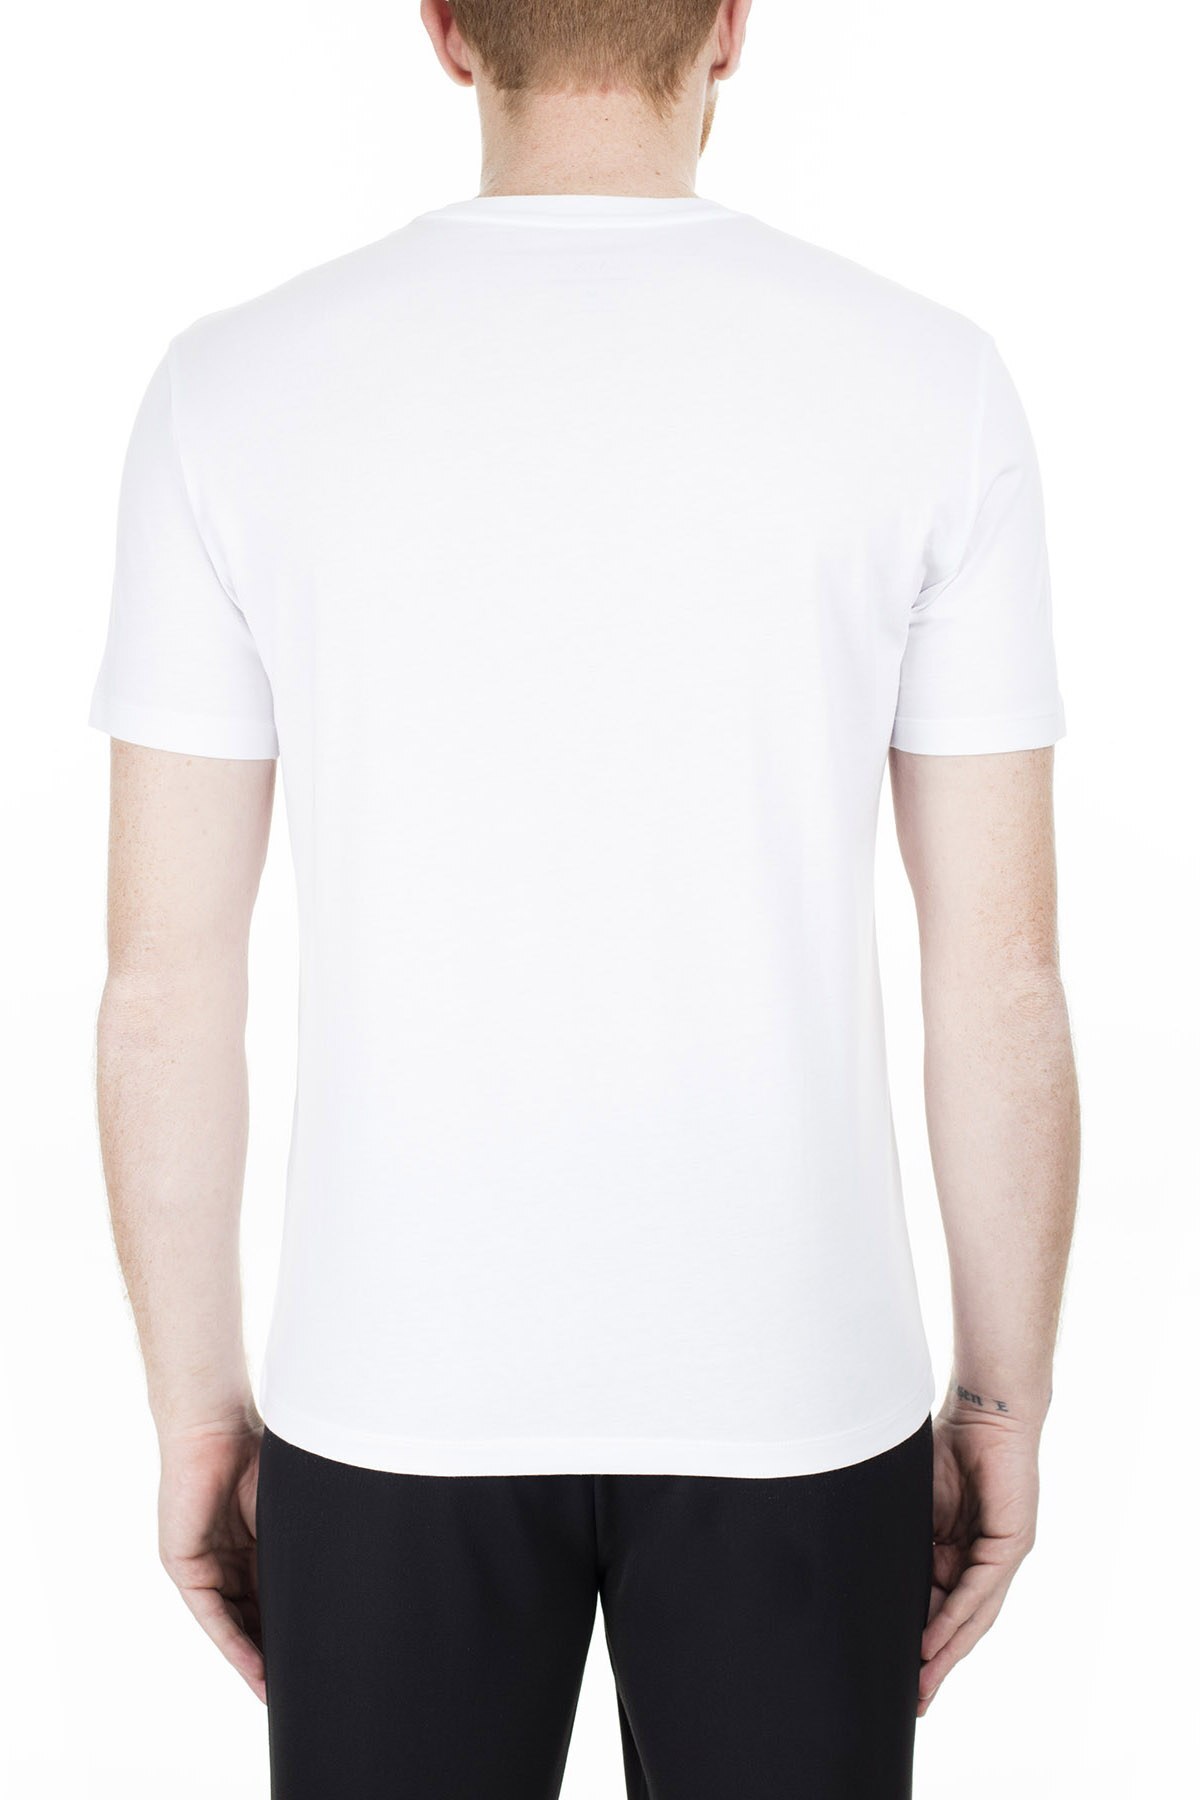 Armani Exchange Erkek T Shirt 8NZT88 Z8H4Z 1100 BEYAZ